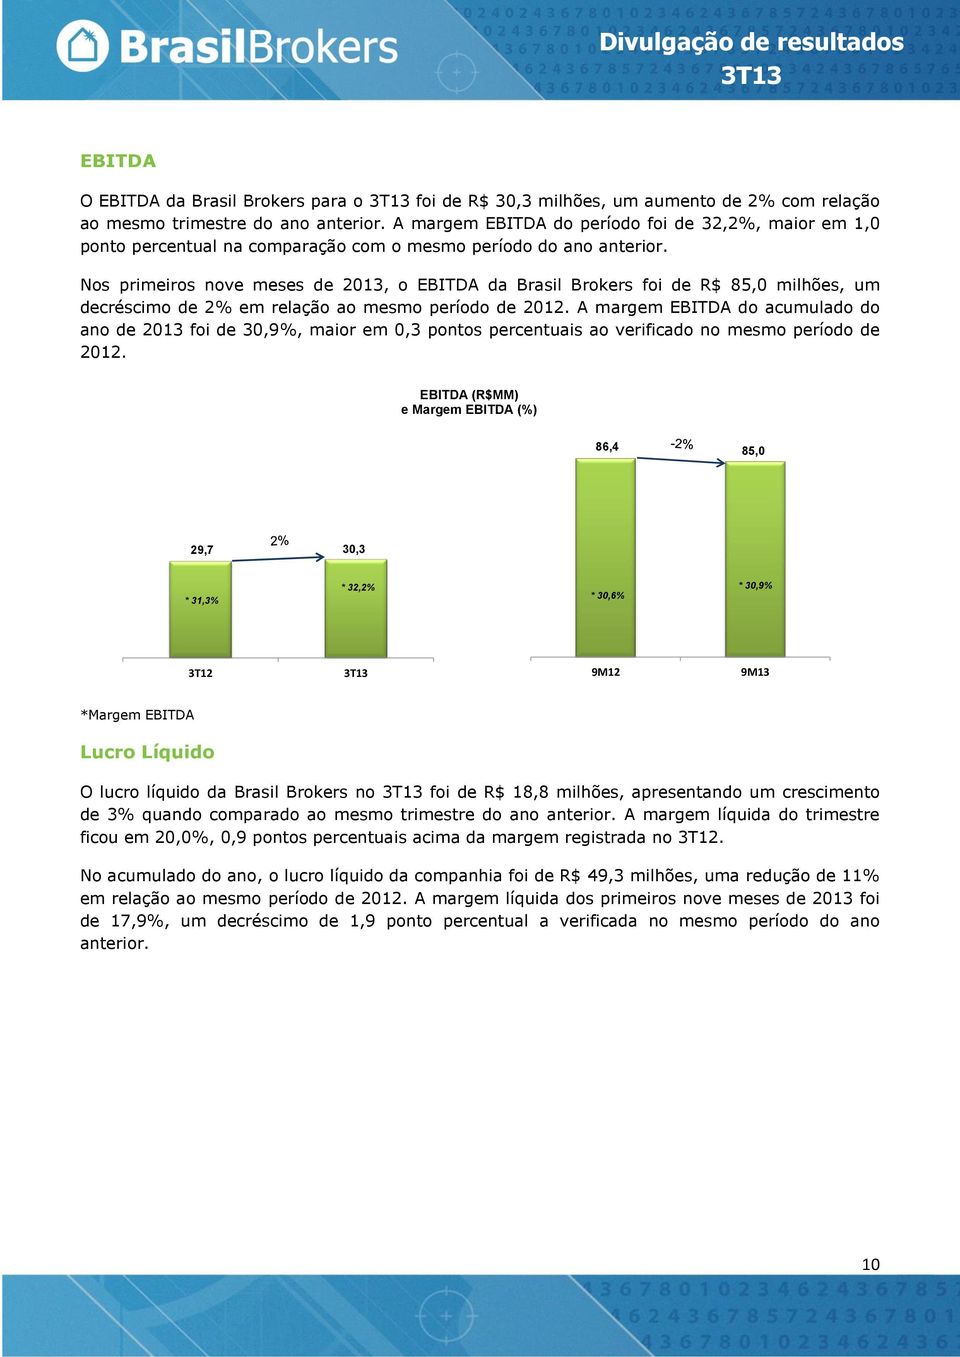 Nos primeiros nove meses de 2013, o EBITDA da Brasil Brokers foi de R$ 85,0 milhões, um decréscimo de 2% em relação ao mesmo período de 2012.